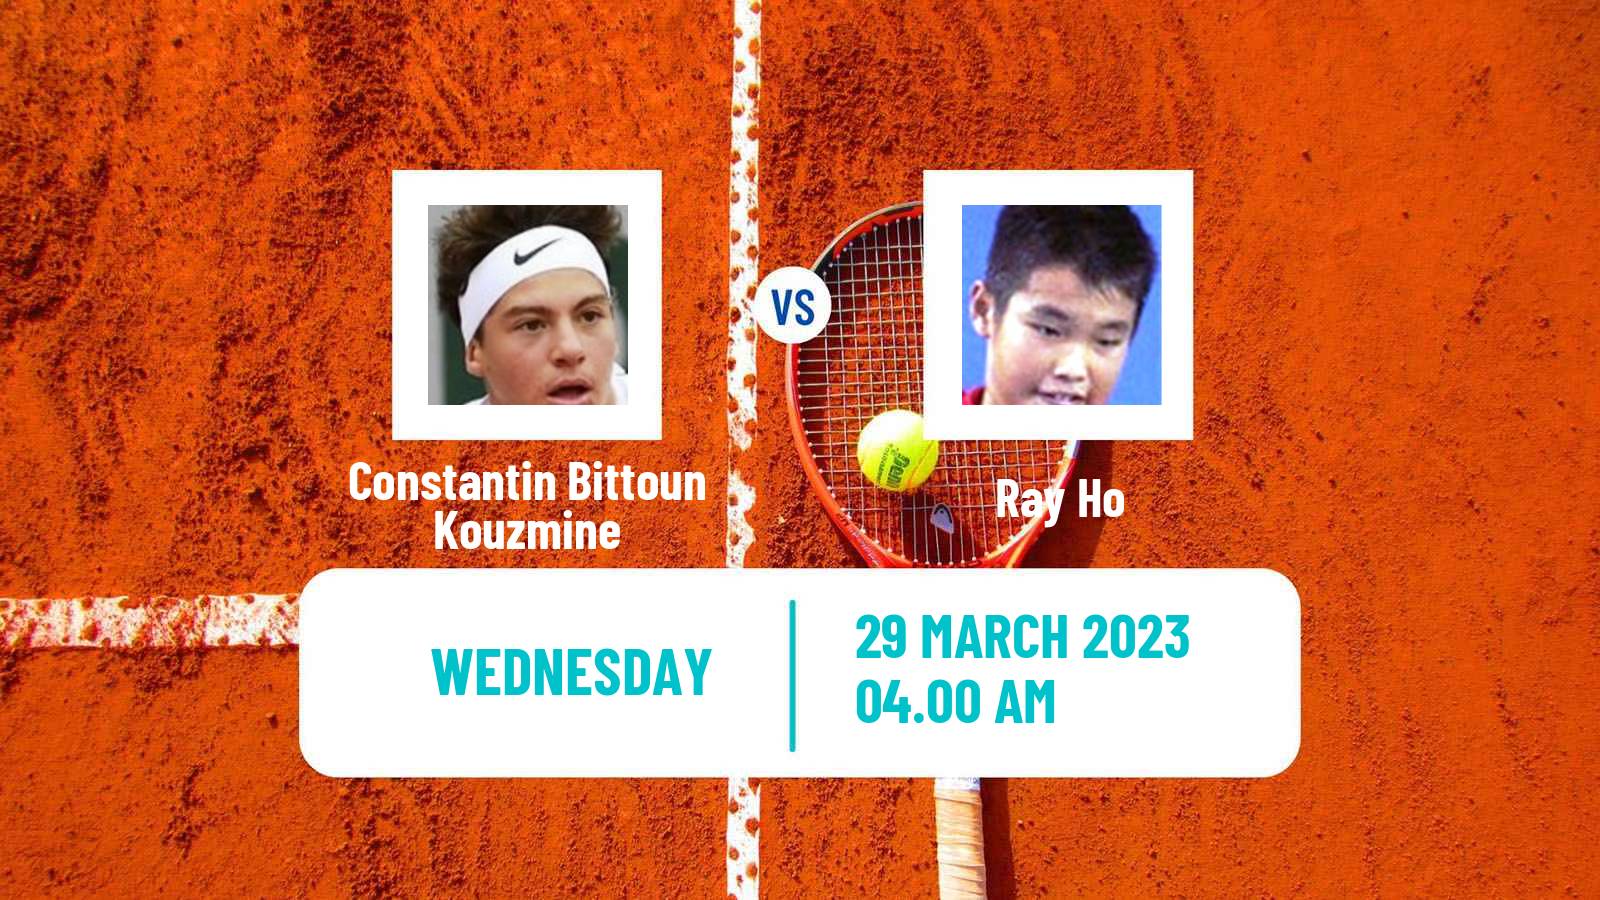 Tennis ITF Tournaments Constantin Bittoun Kouzmine - Ray Ho